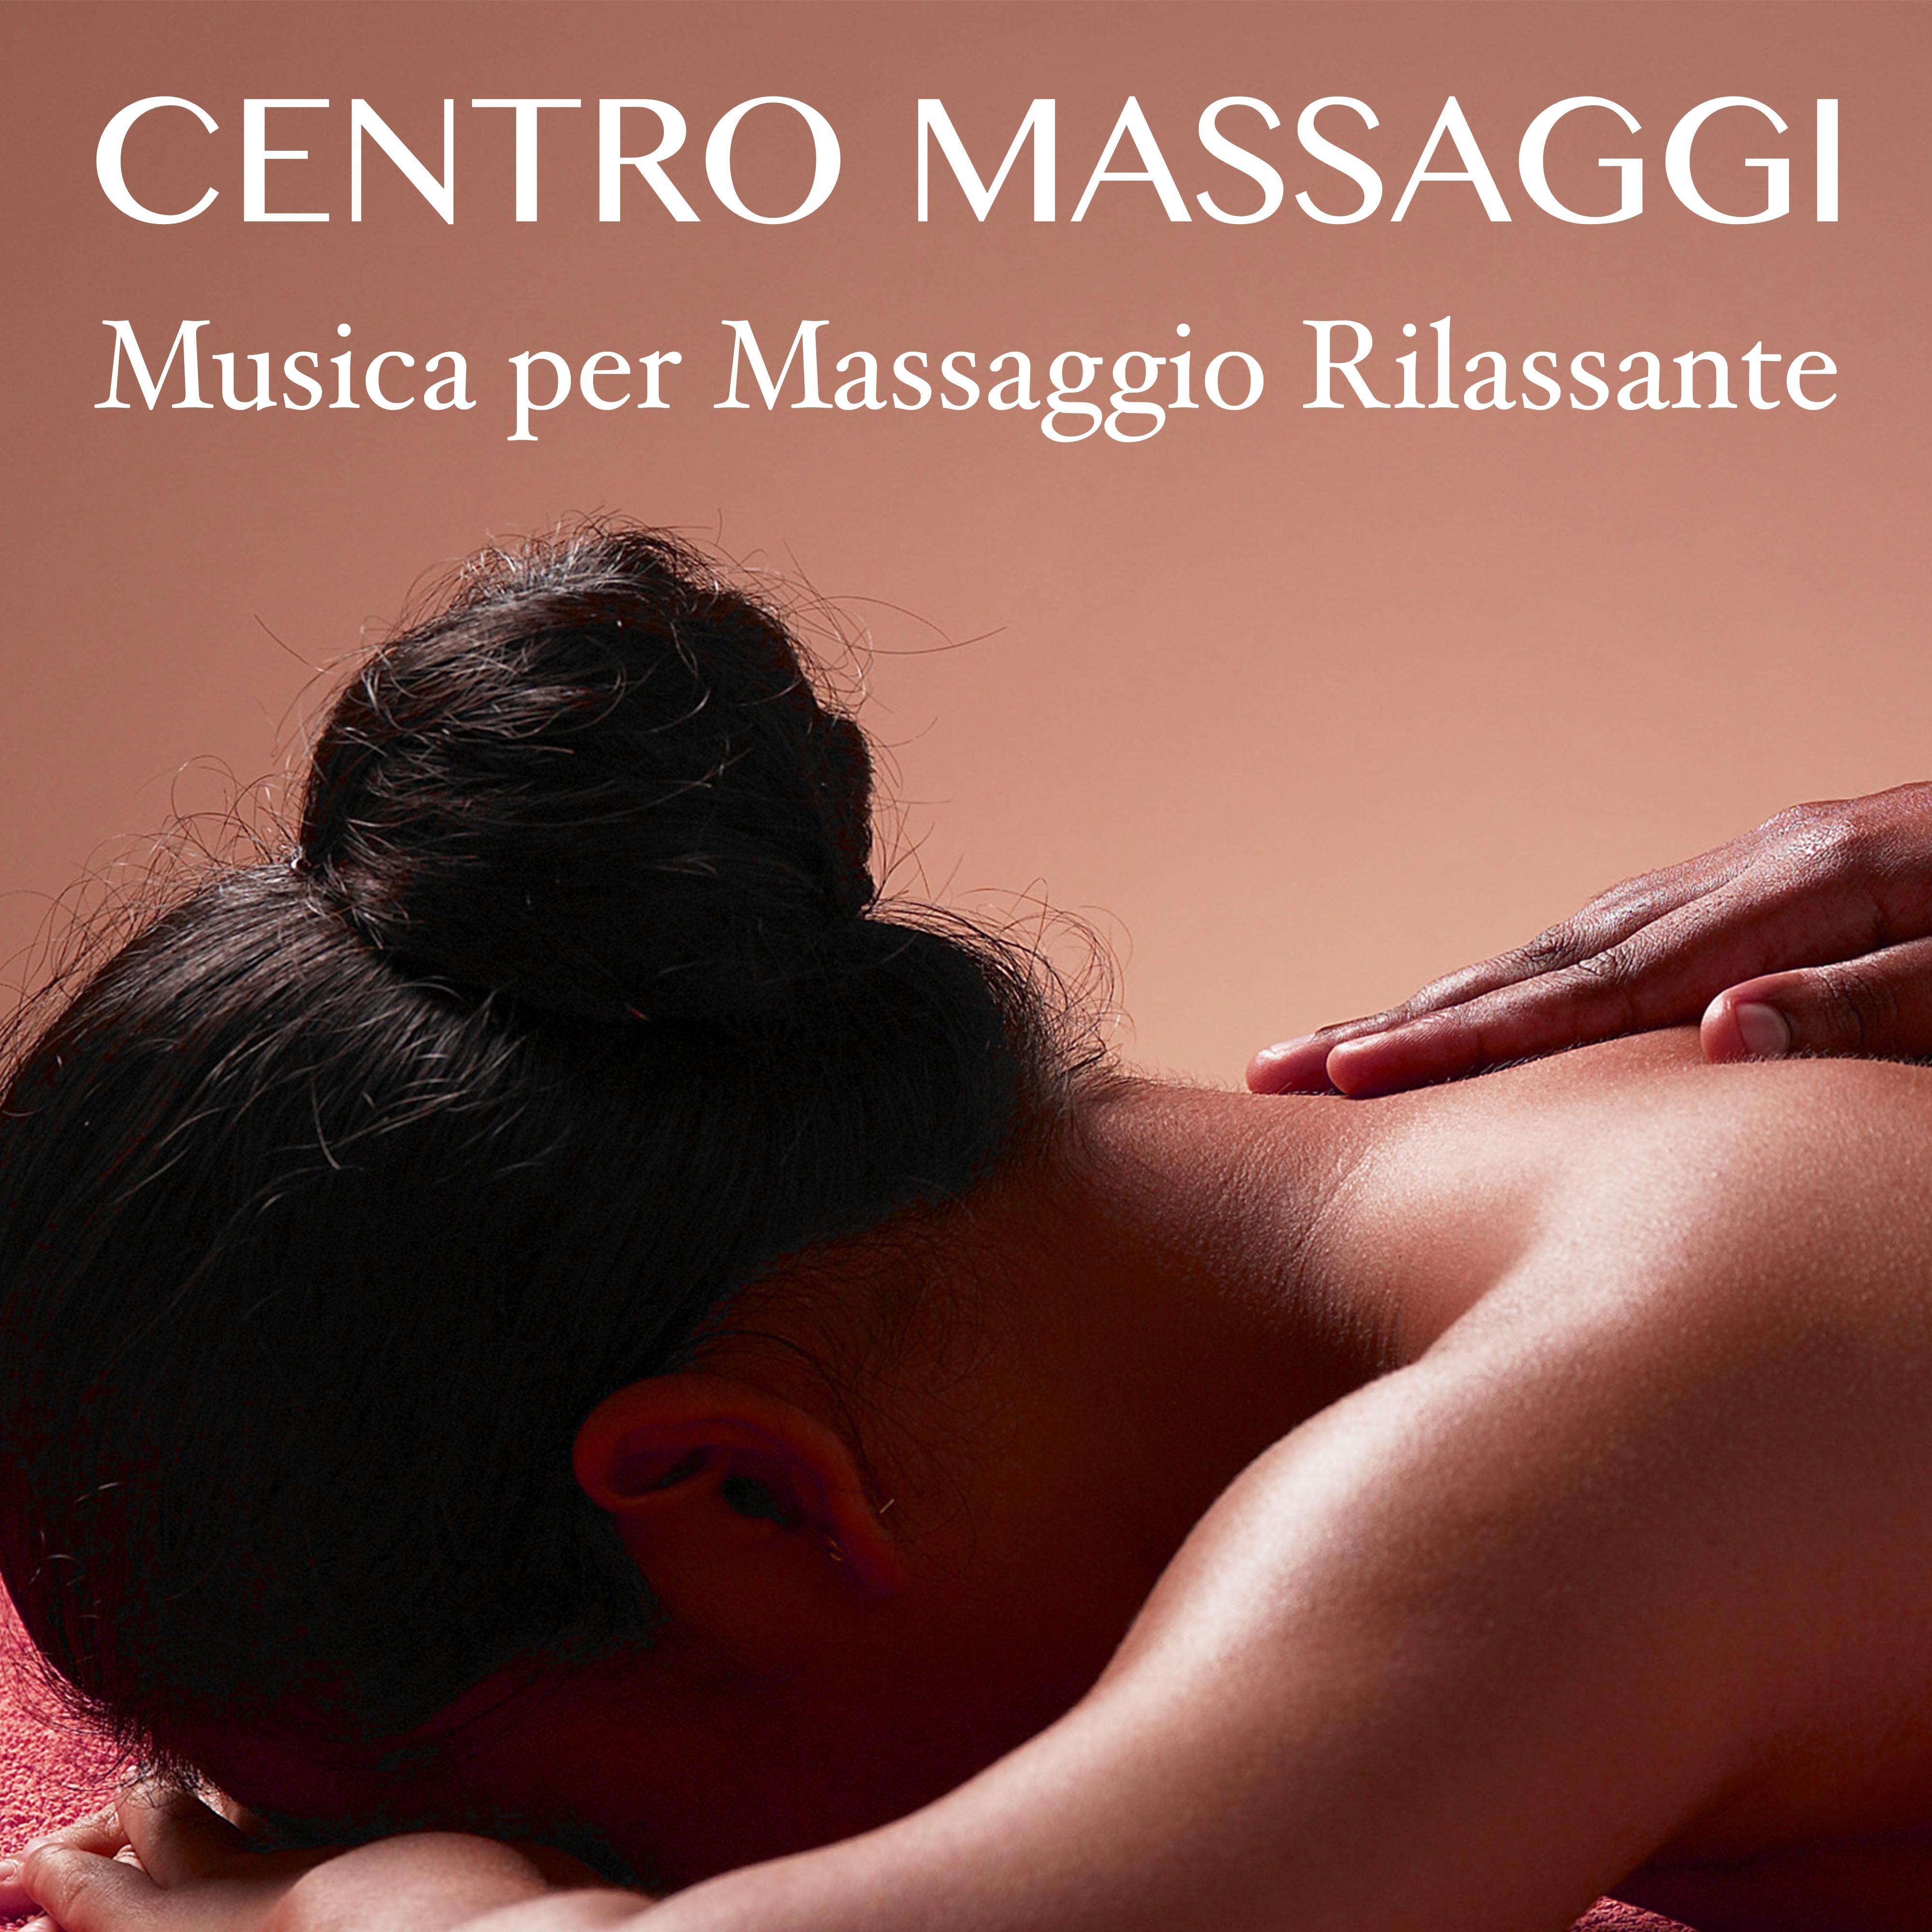 Centro Massaggi: Musica per Massaggio Rilassante